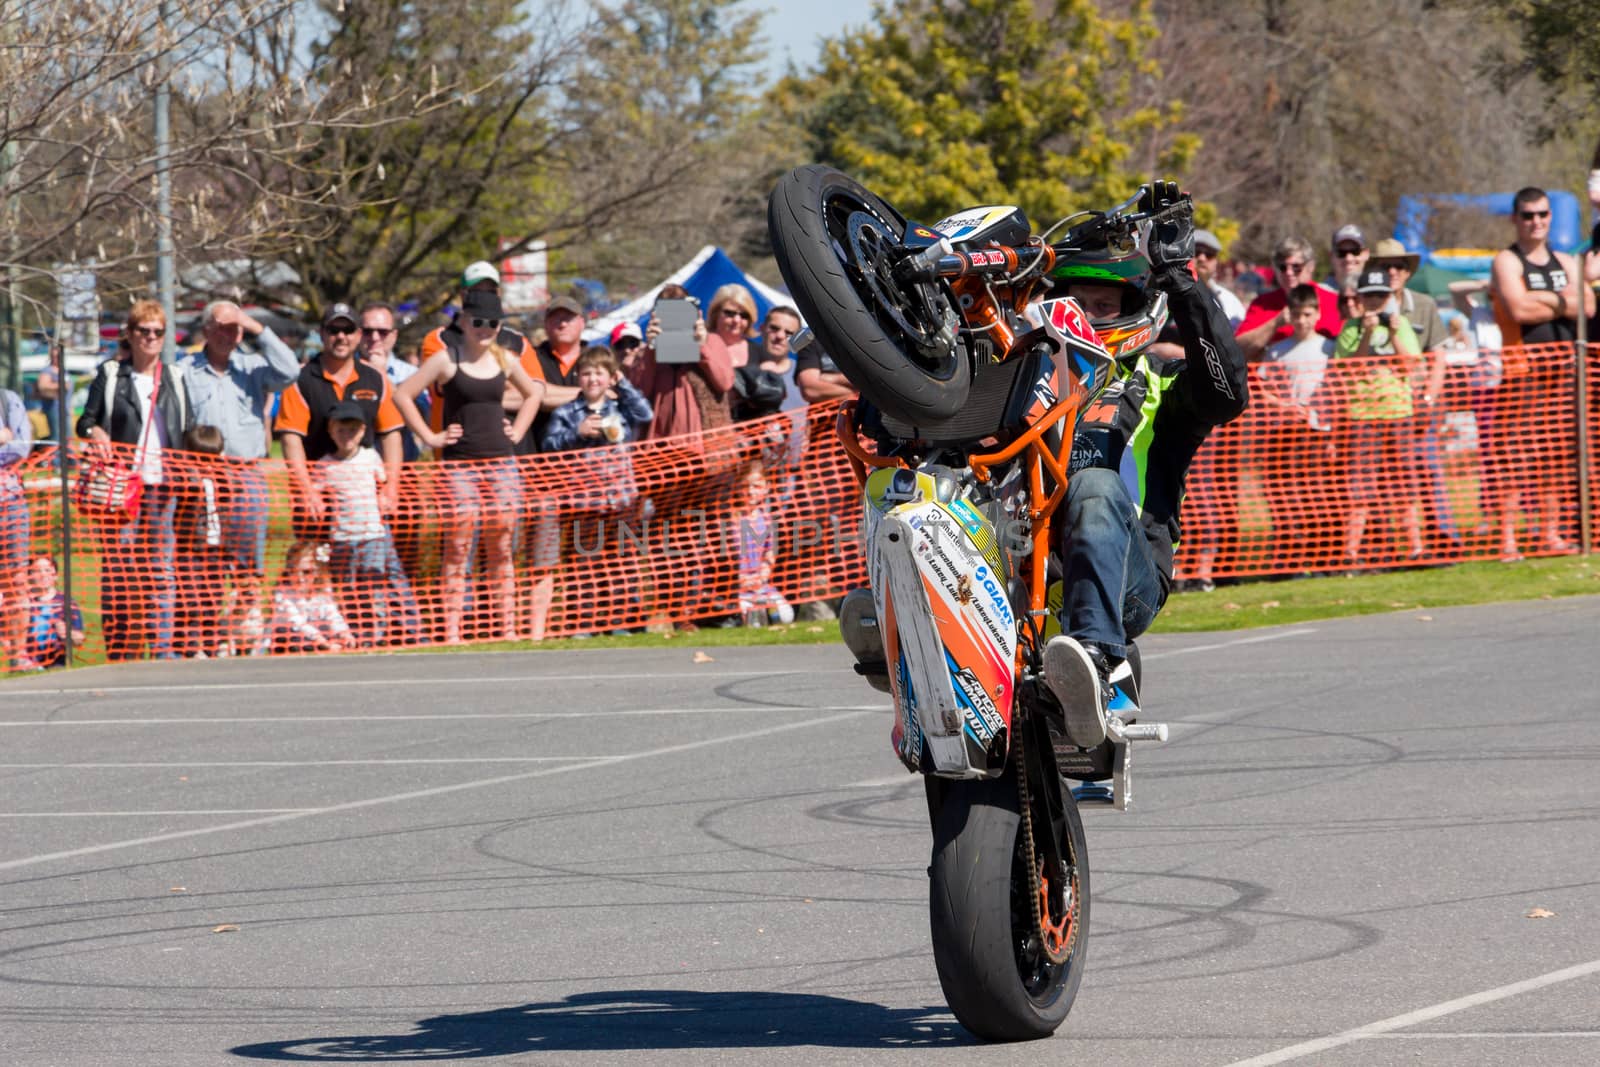 Motorcycle Stunt Rider - Wheelie by davidhewison